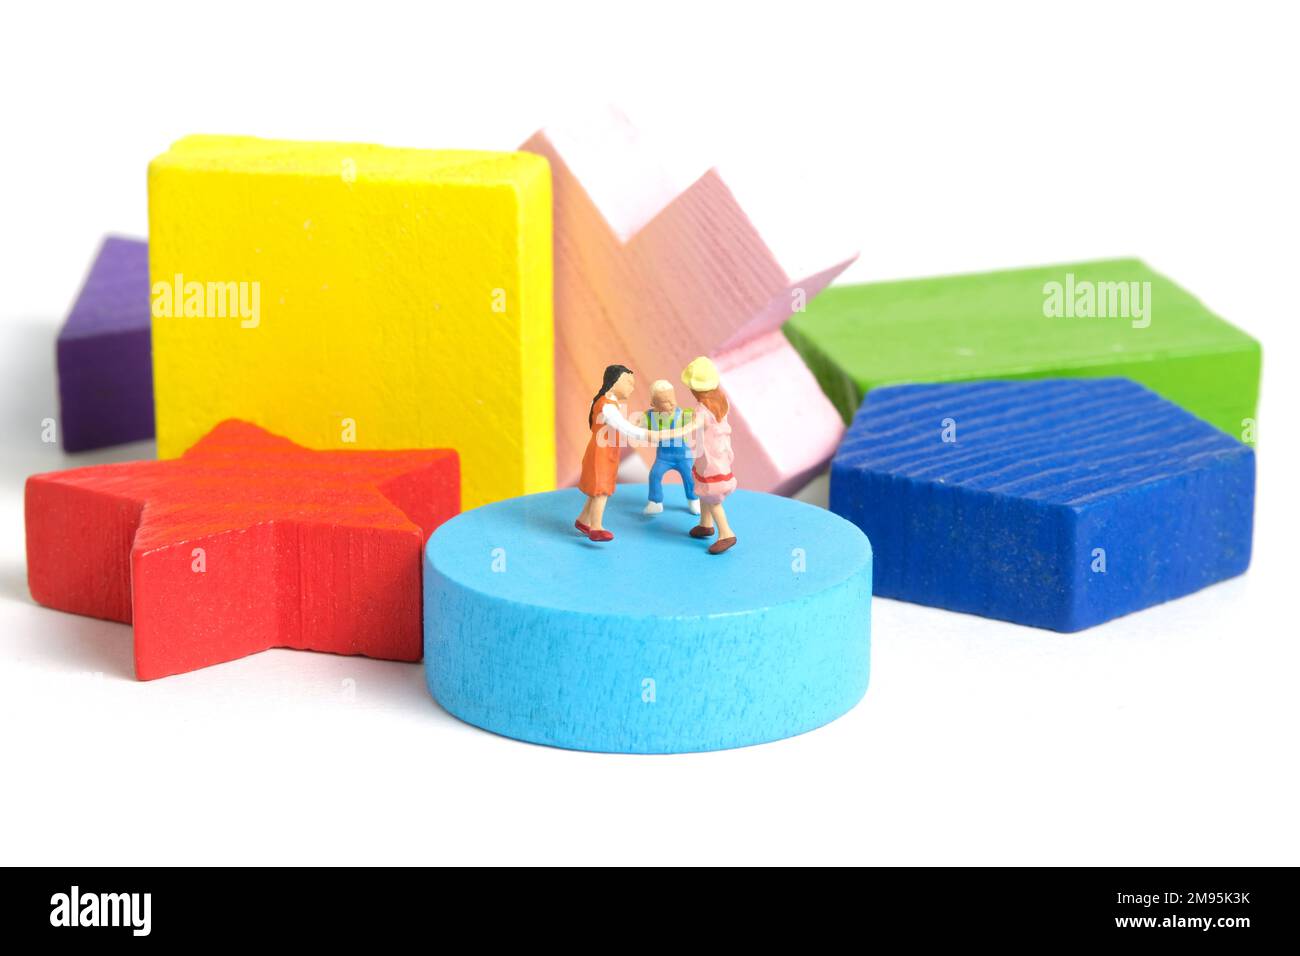 Photographie miniature de personnage de jouet de personnes. Concept d'apprentissage amusant. Les enfants jouent ensemble au-dessus du puzzle en bois Montessori. Isolé sur fond blanc. Image Banque D'Images